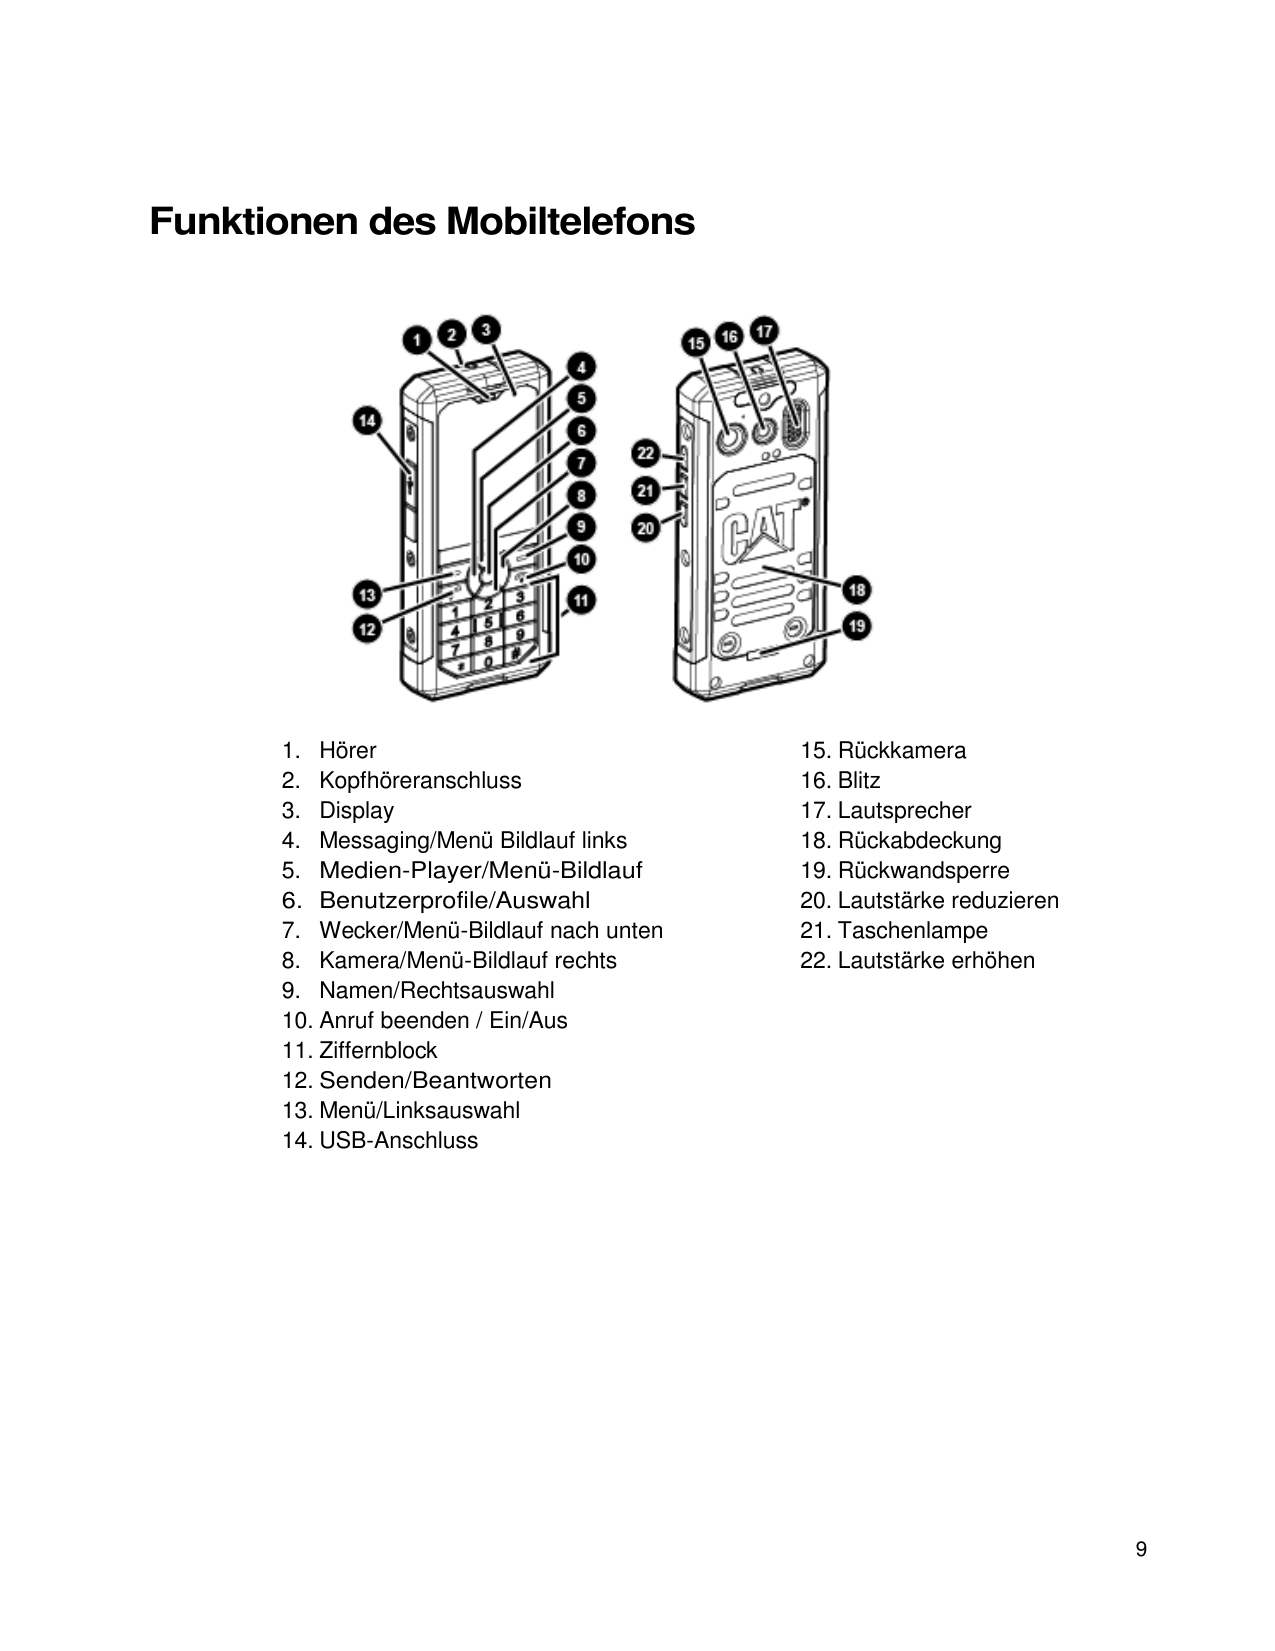 Funktionen des Mobiltelefons1. HörerHörer2. Kopfhöreranschluss3. Display4. Messaging/Menü Bildlauf links5. Medien-Player/Menü-Bi